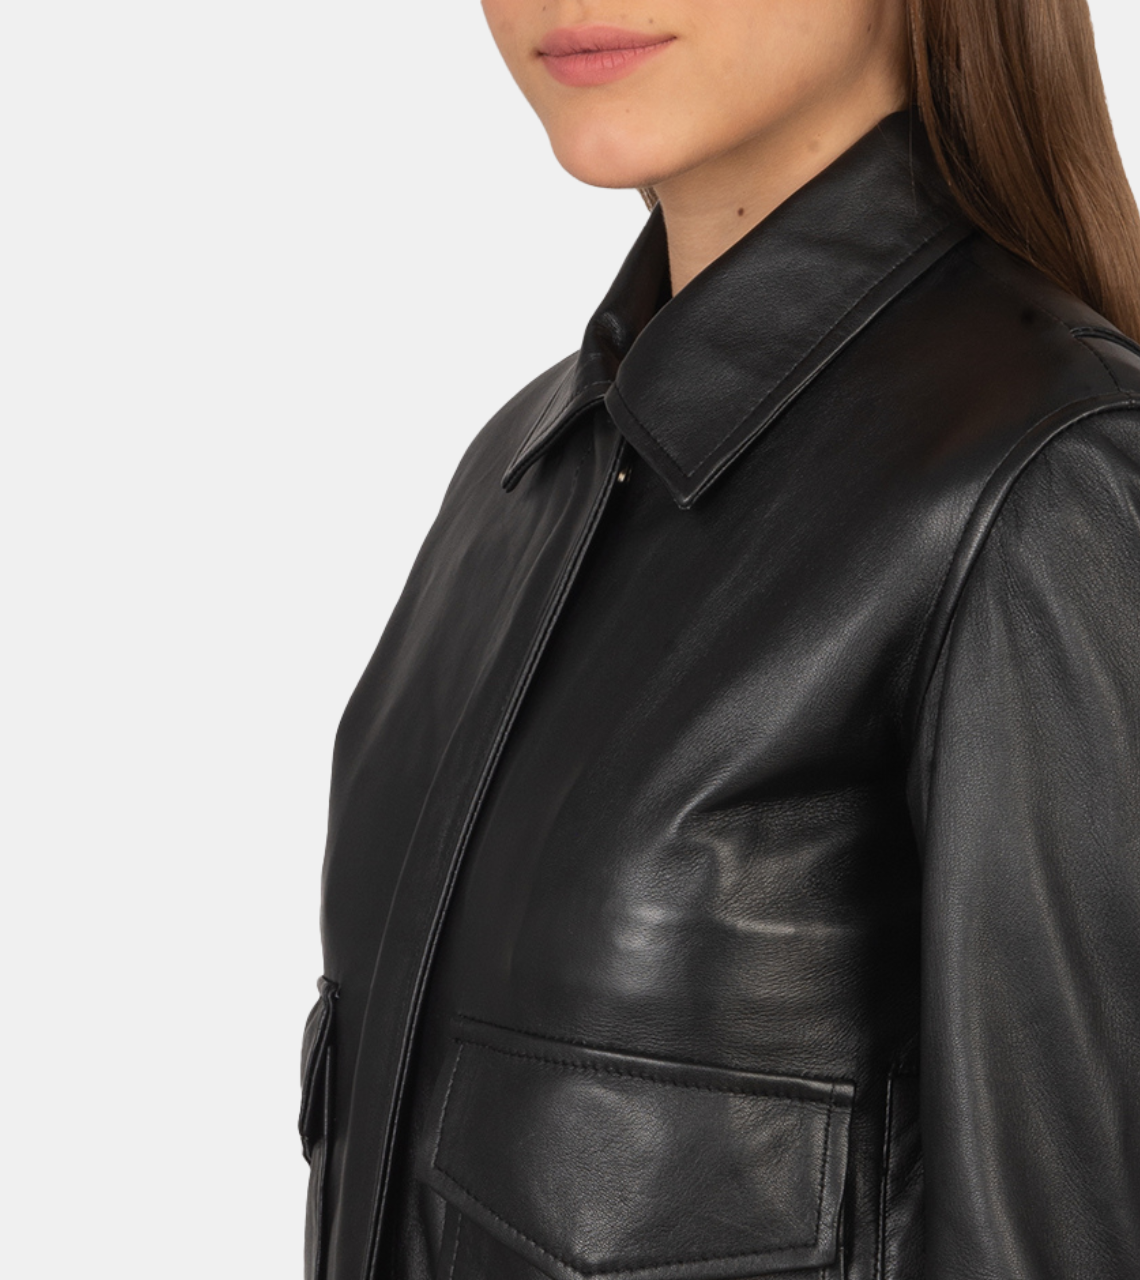 Melrose Women's Black Bomber Leather Jacket For Men's